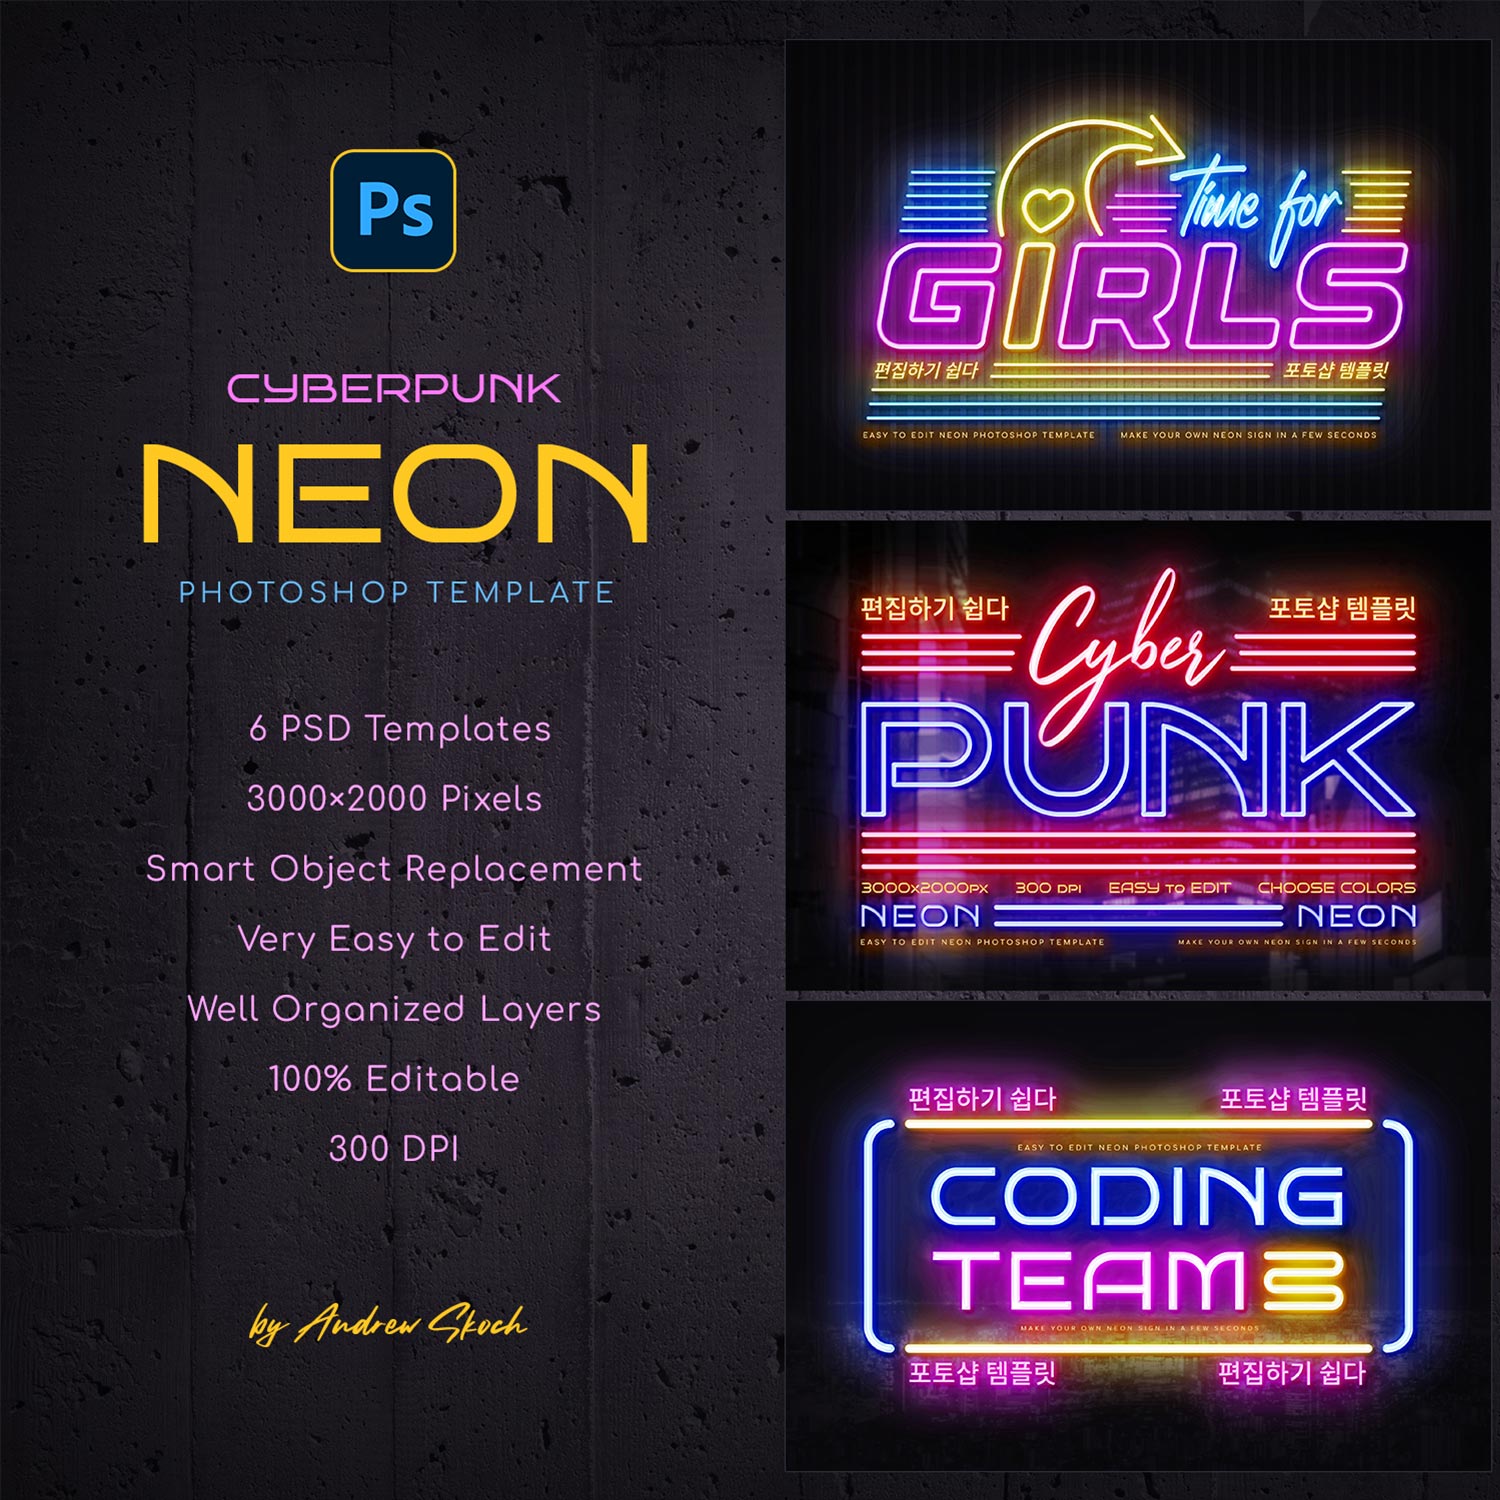 Cyberpunk Neon Logo preview image.